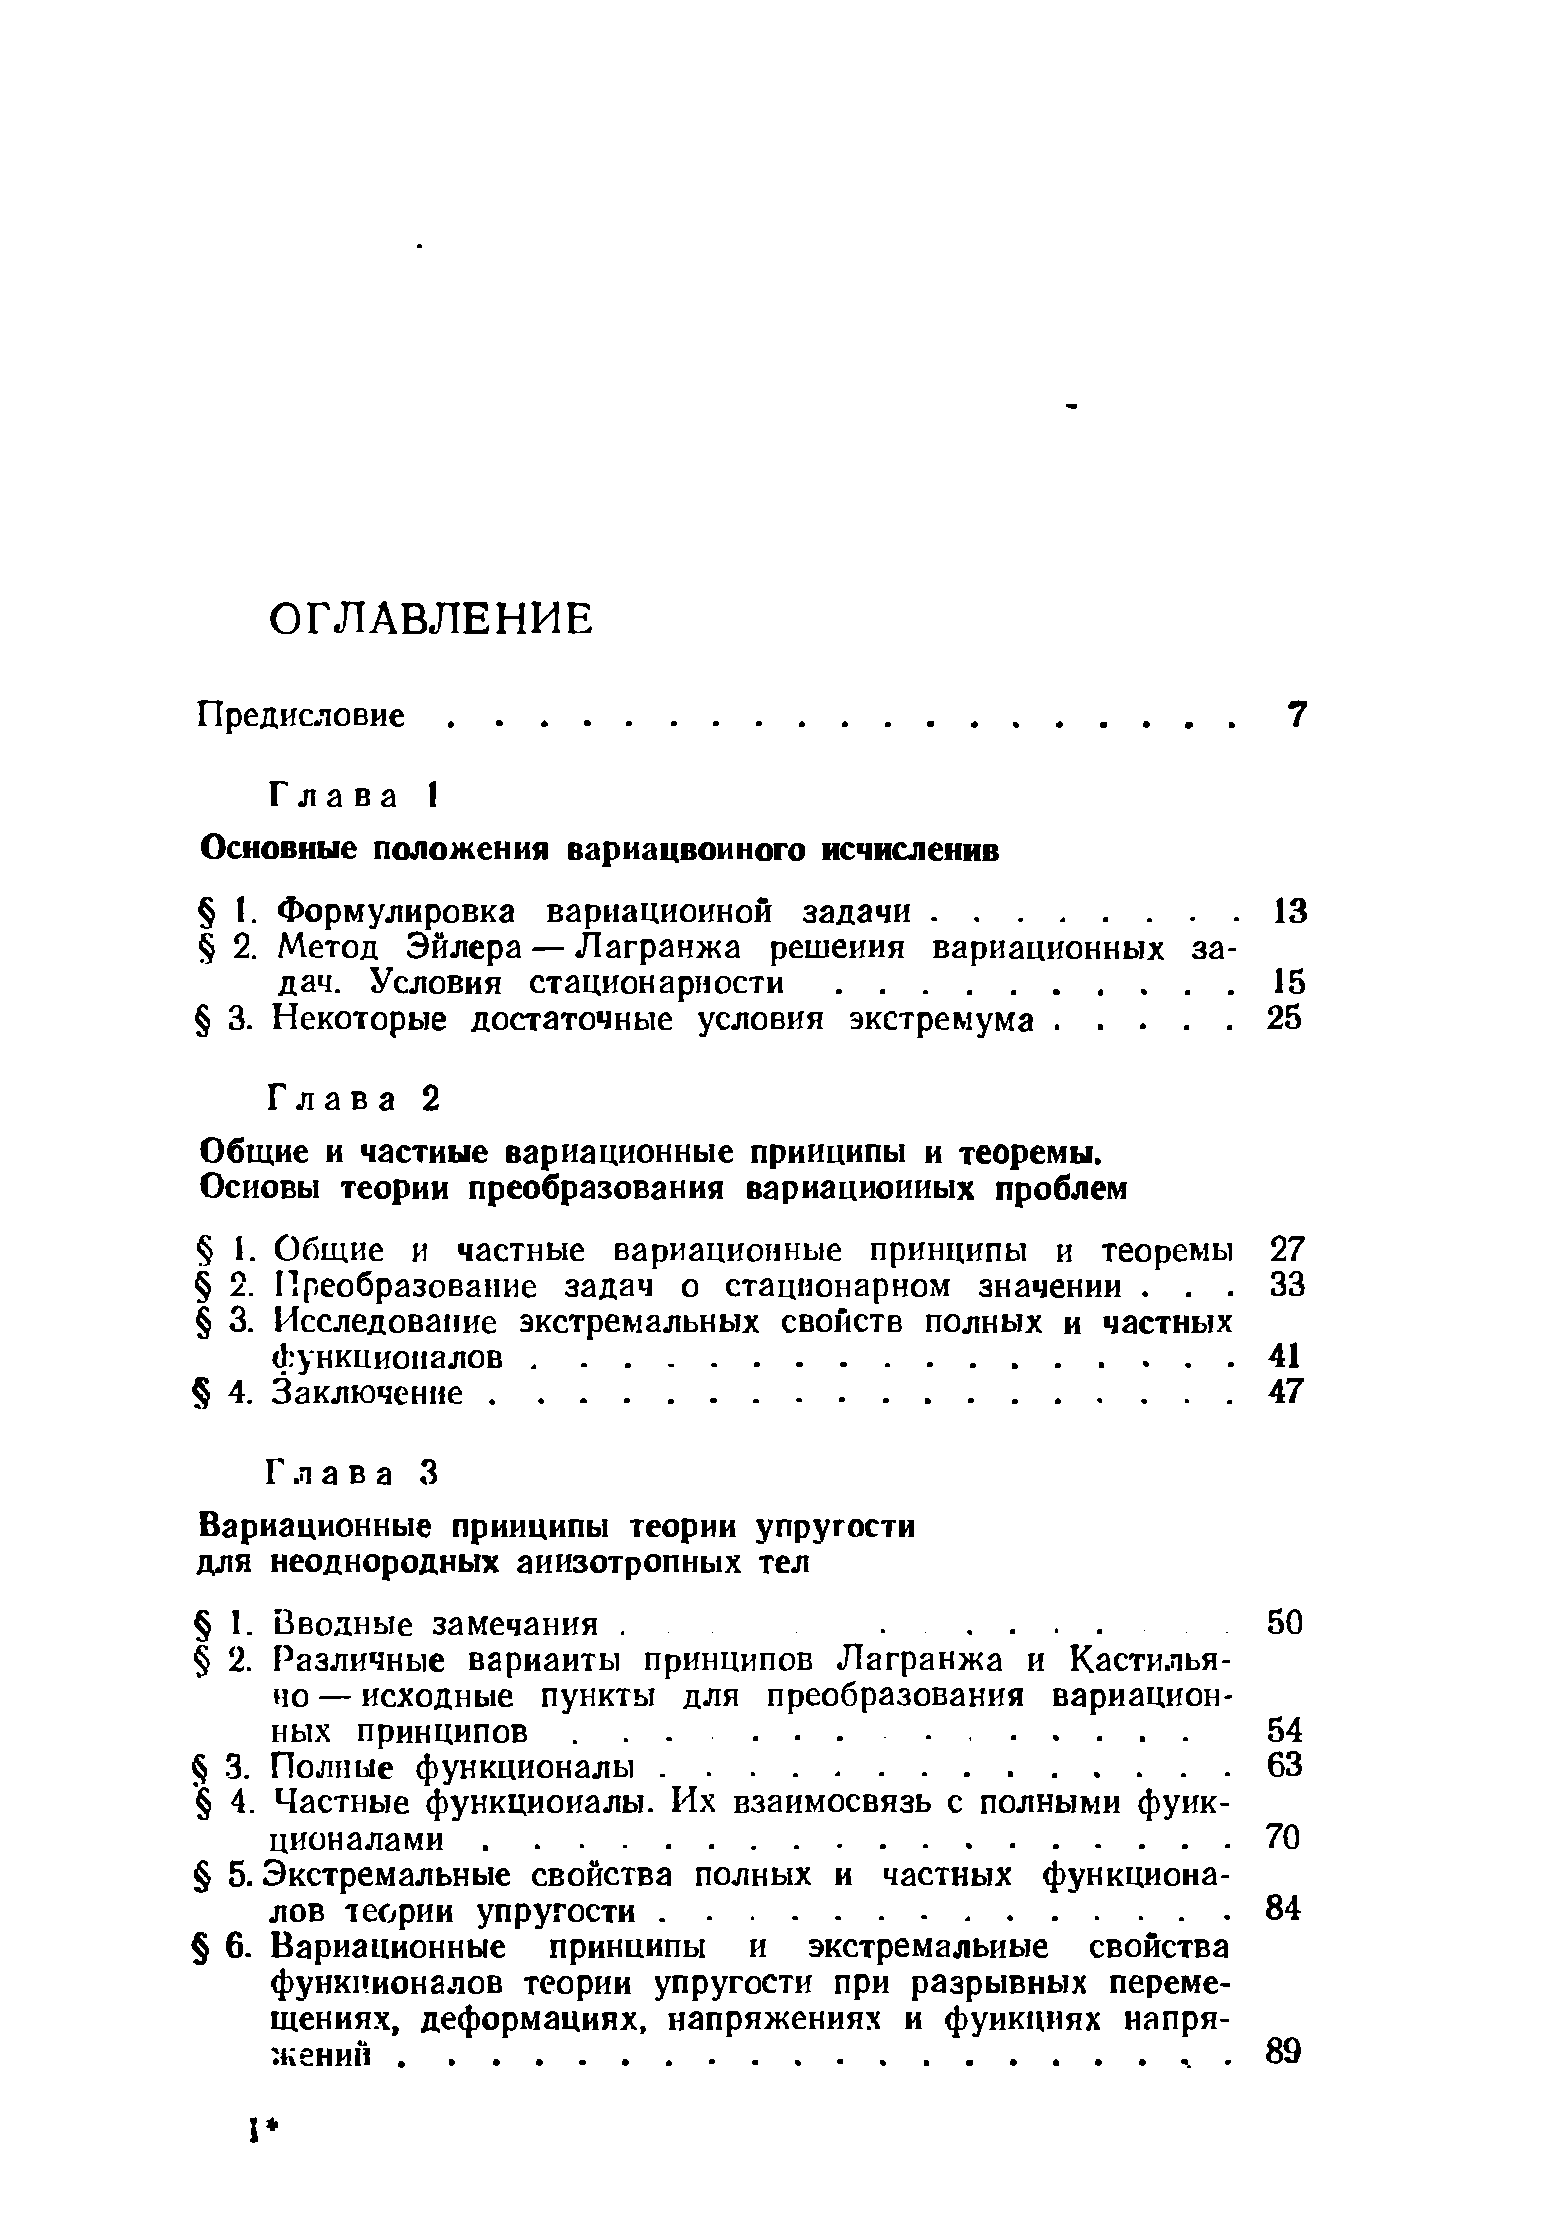 Общие и частные вариационные принципы и теоремы.
